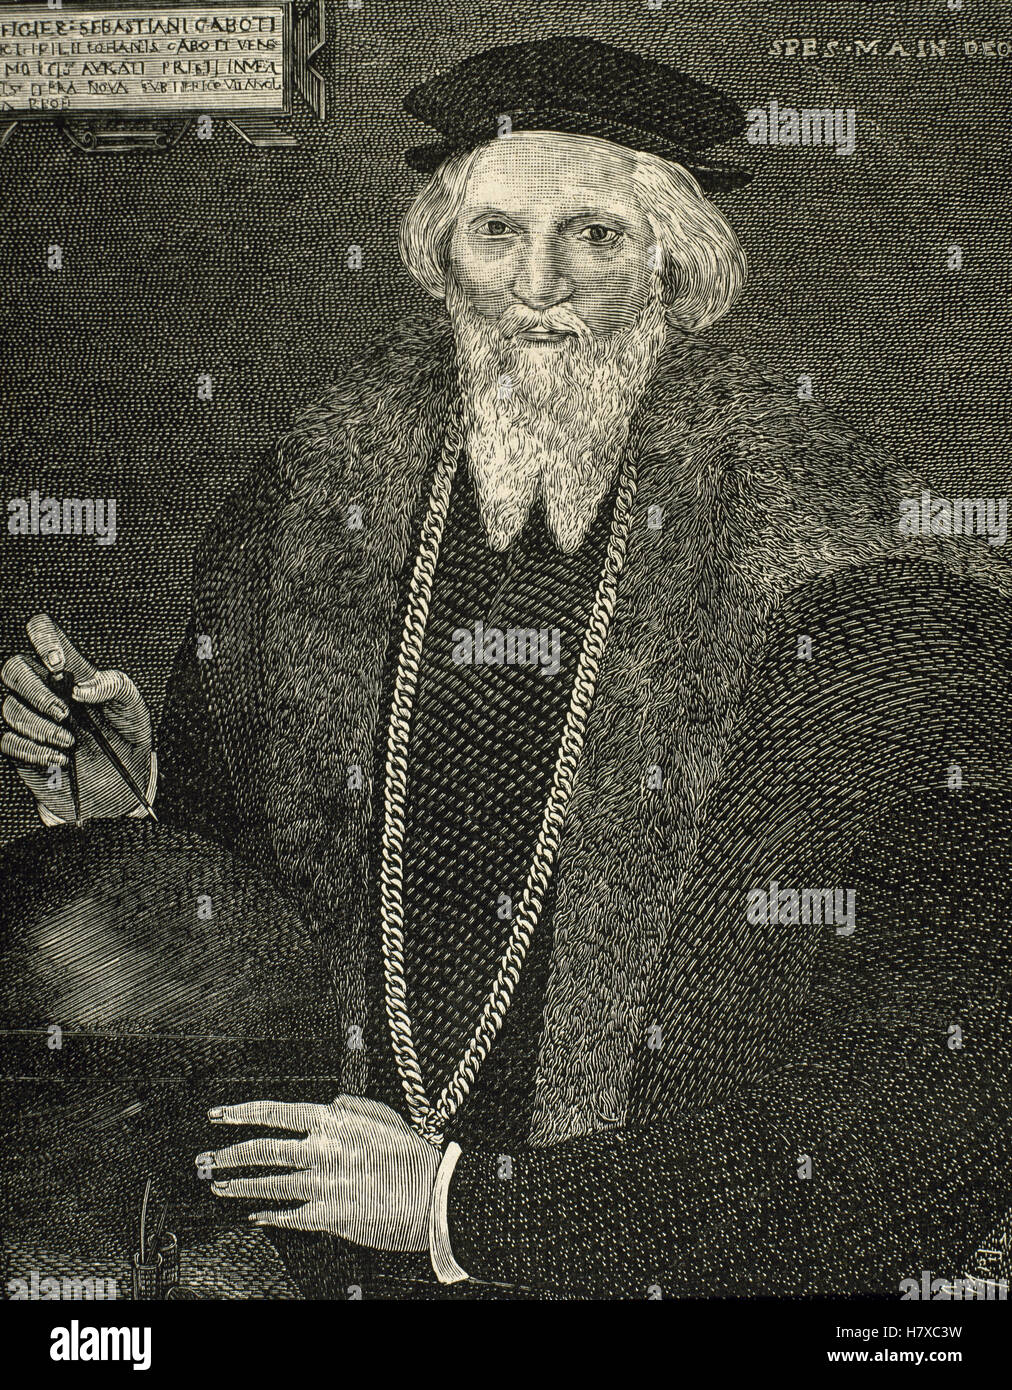 Sébastien Cabot (ch. 1474-c. 1557). L'explorateur italien. Portrait. Gravure de Capuz. Banque D'Images